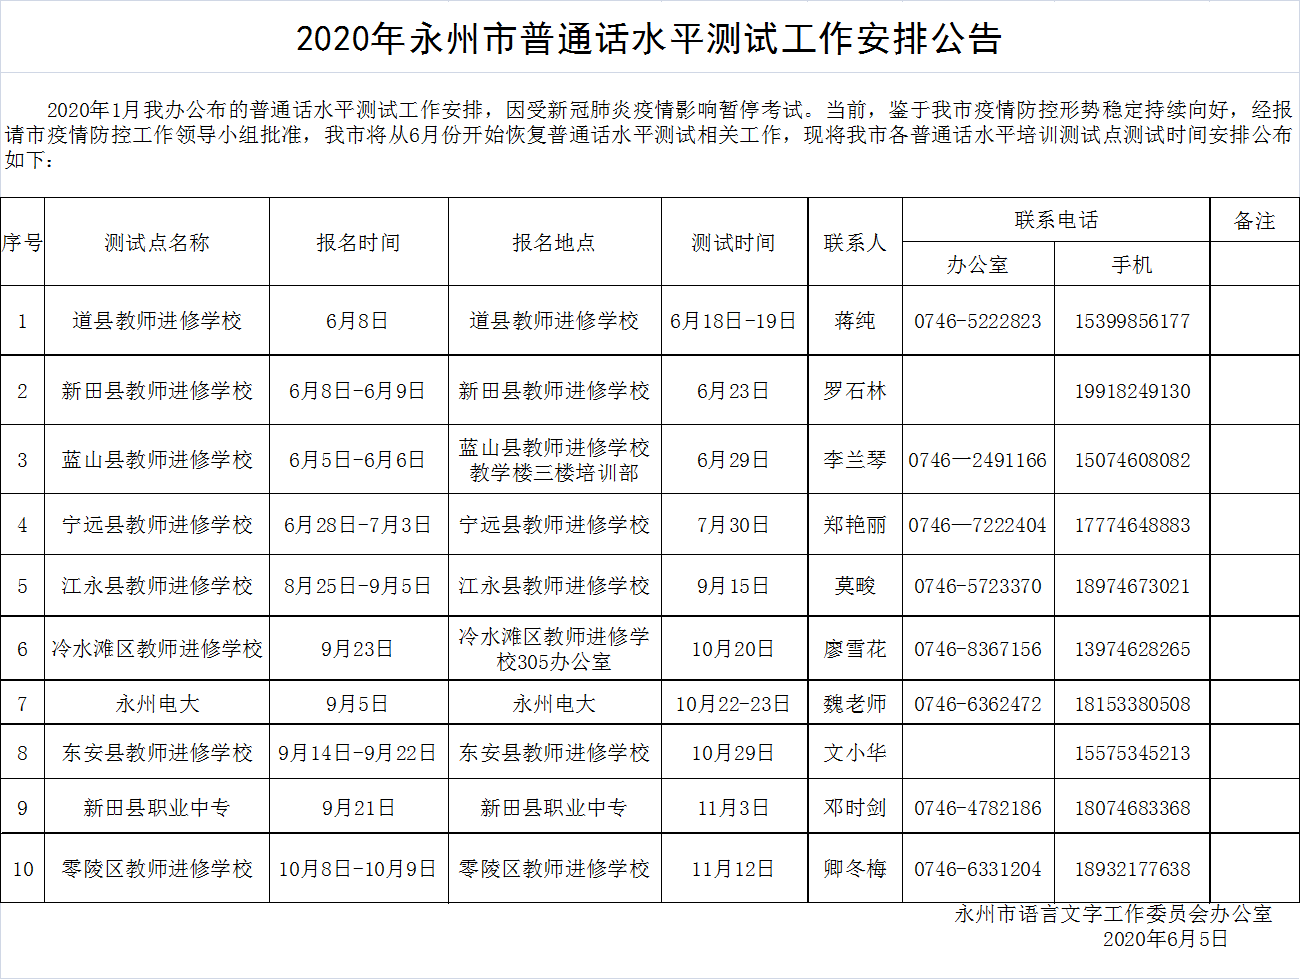 湖南永州市2020年普通话水平测试工作安排公告